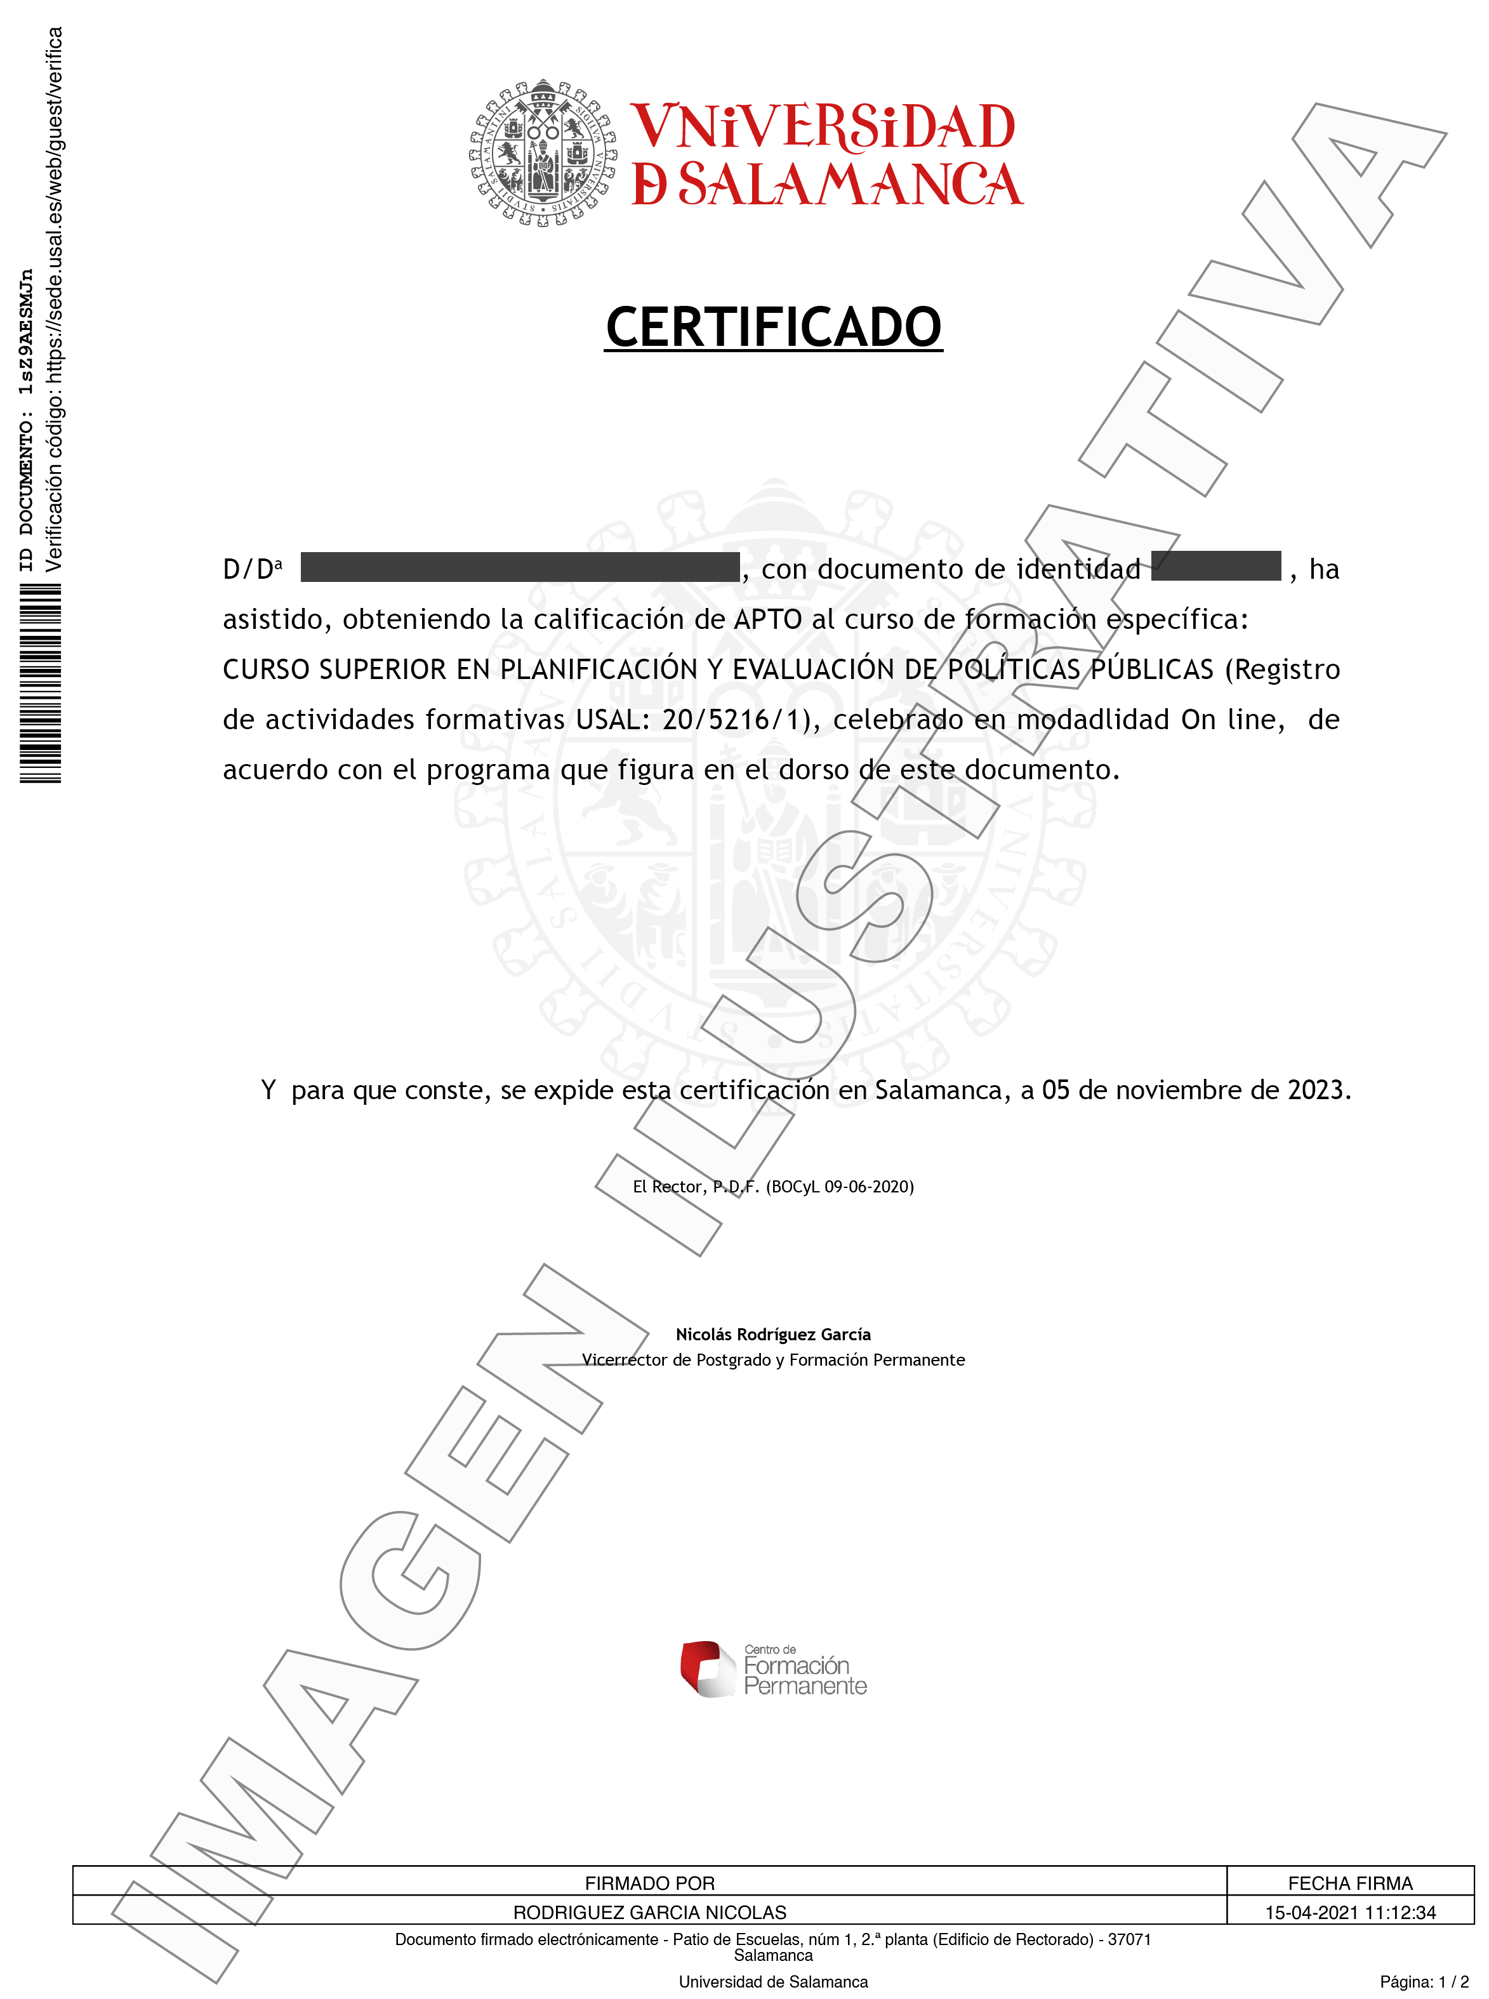 CSPOLPU-Diploma